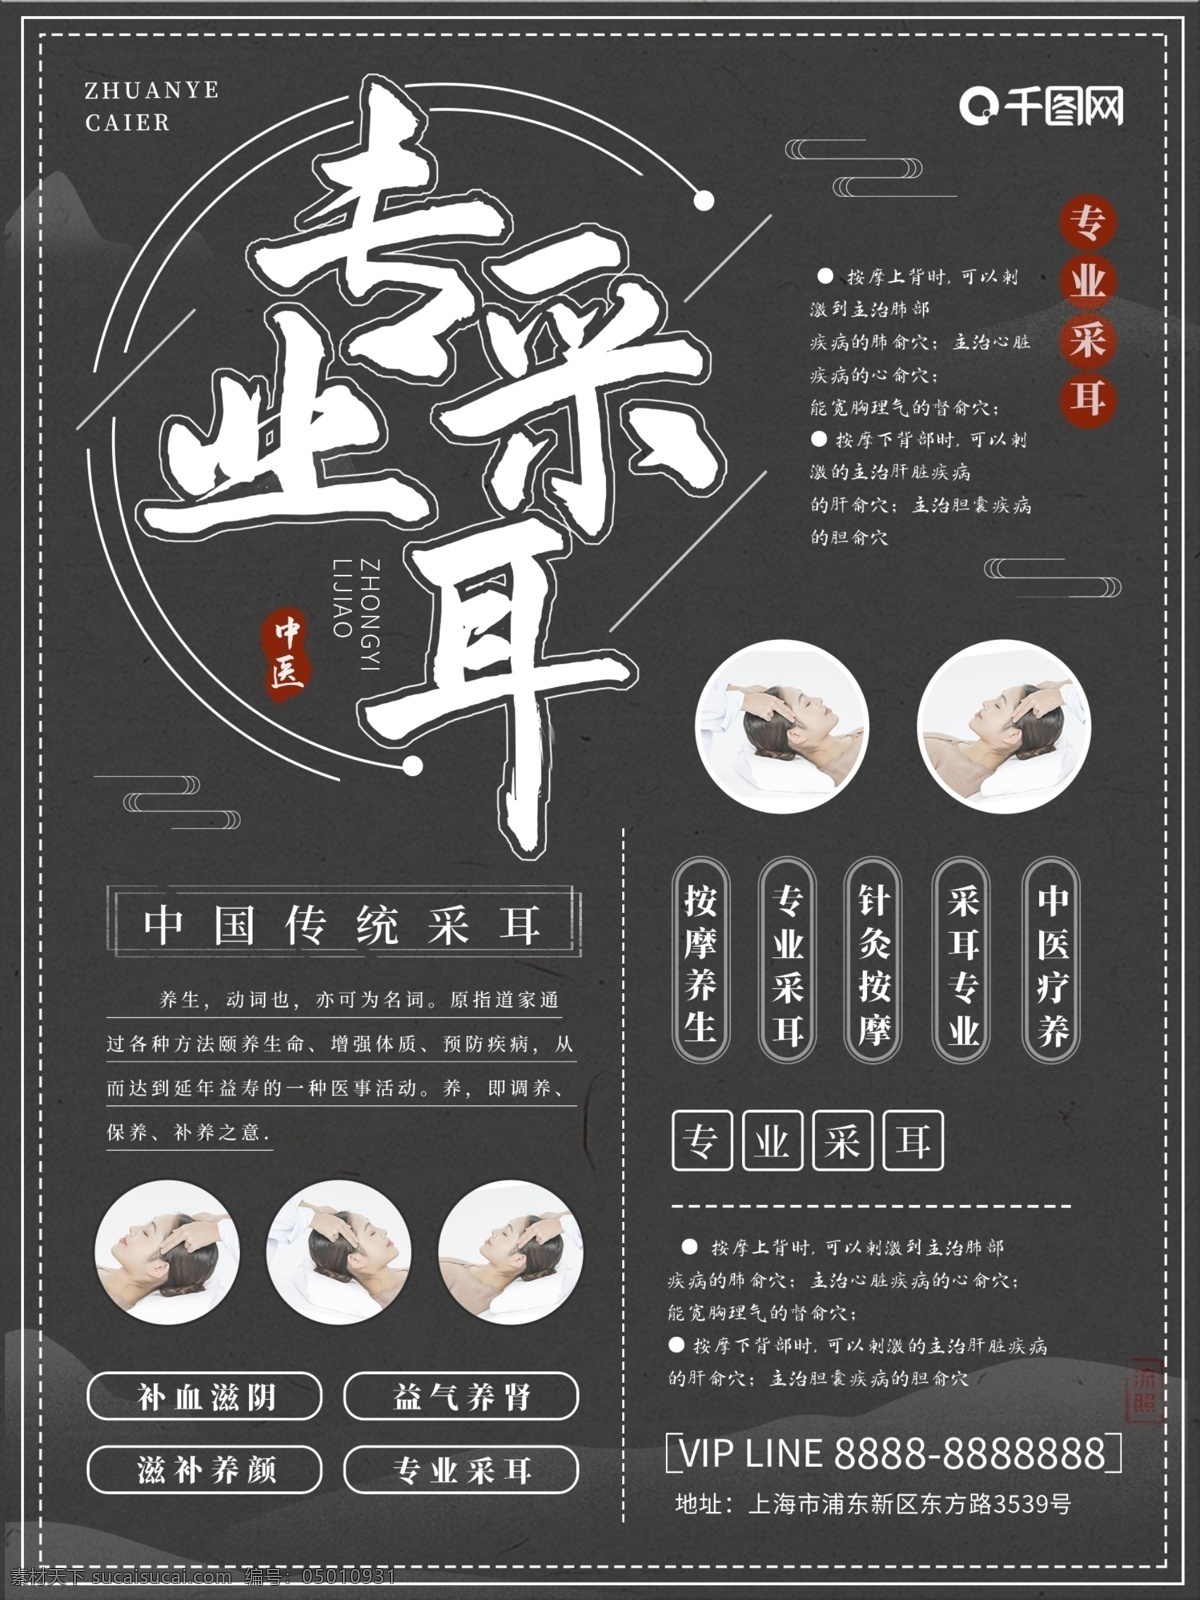 中国 风 专业 采 耳 商业 海报 中国风 采耳 按摩 保健 养生 简约风 商业海报